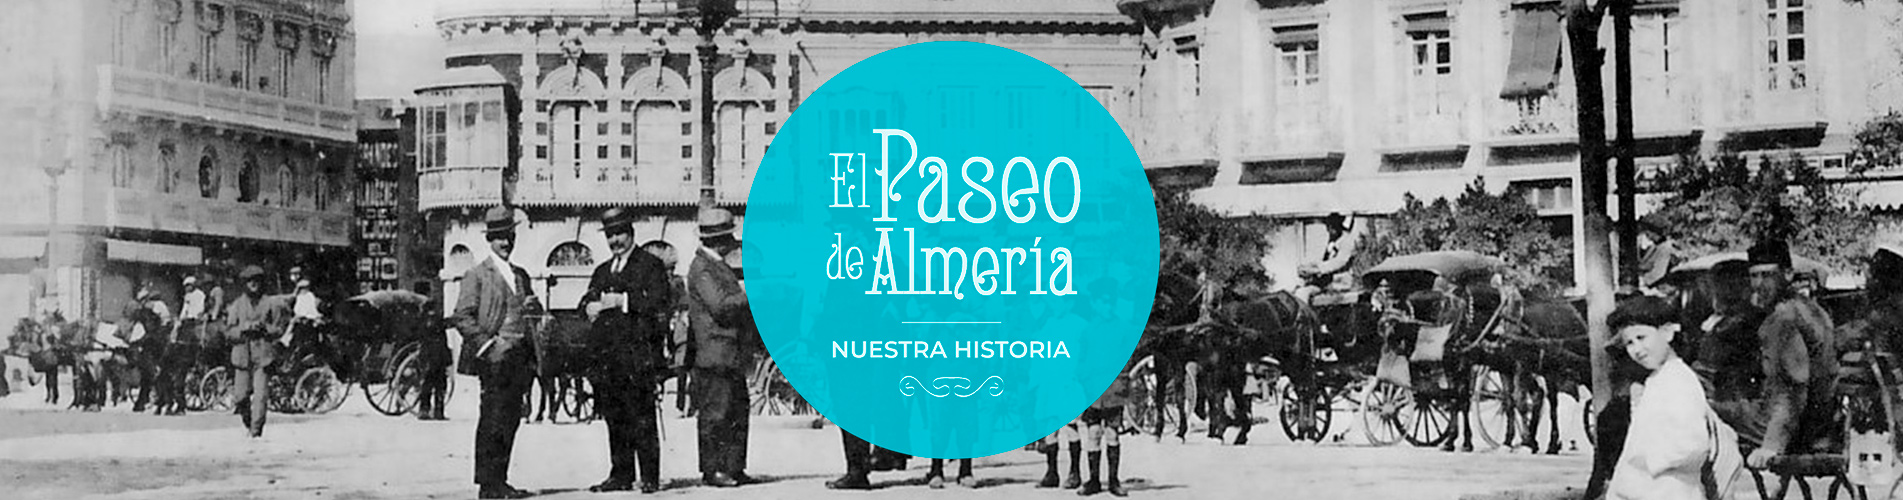 El paseo de Almería - Nuestra historia